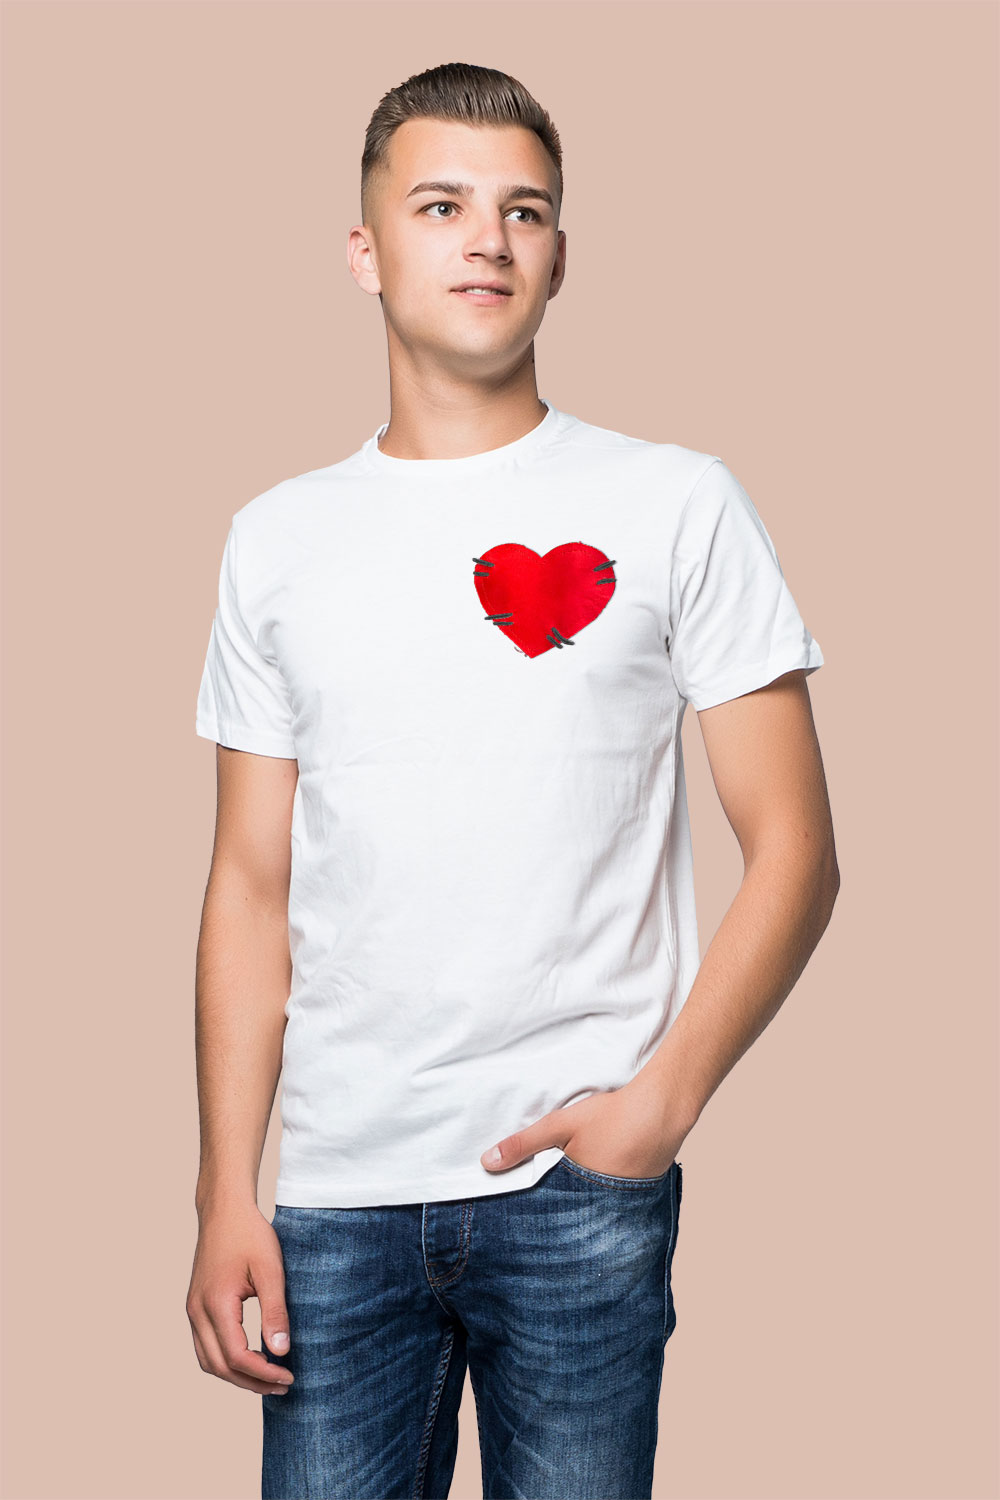 Camiseta hombre blanca corazón satinado - Tienda Segundas Oportunidades